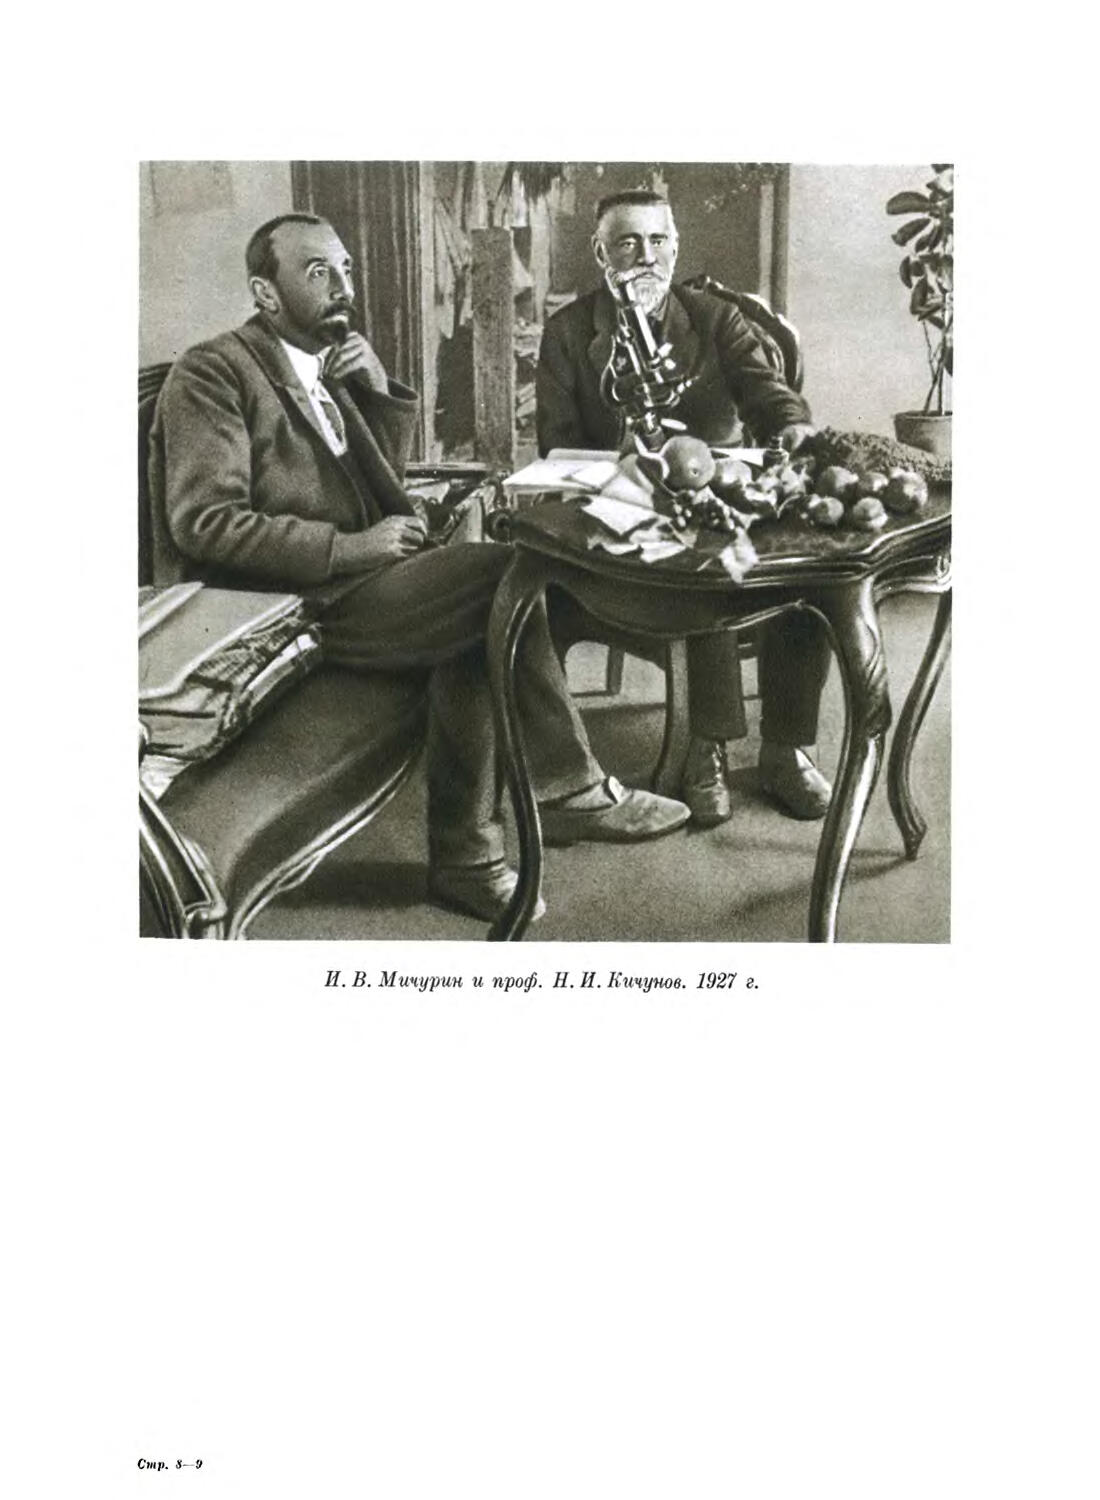 ФОТОГРАФИИ
И. В. Мичурин и проф И. Кичунов. 1927 г.